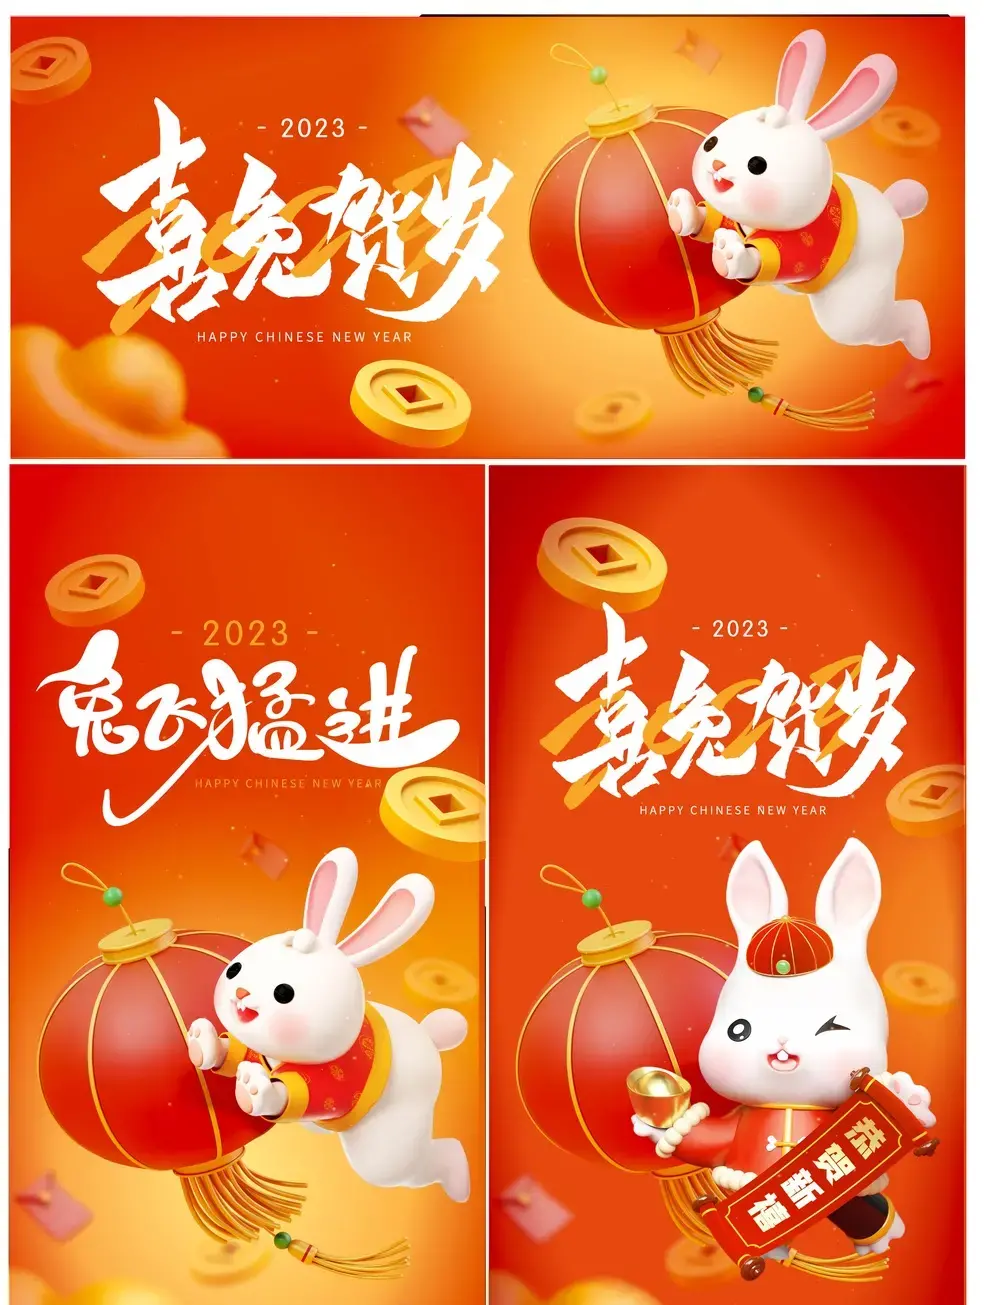 2023潮流创意兔年兔子新年春节插画海报展板图案AI矢量设计素材-爱设计爱分享c